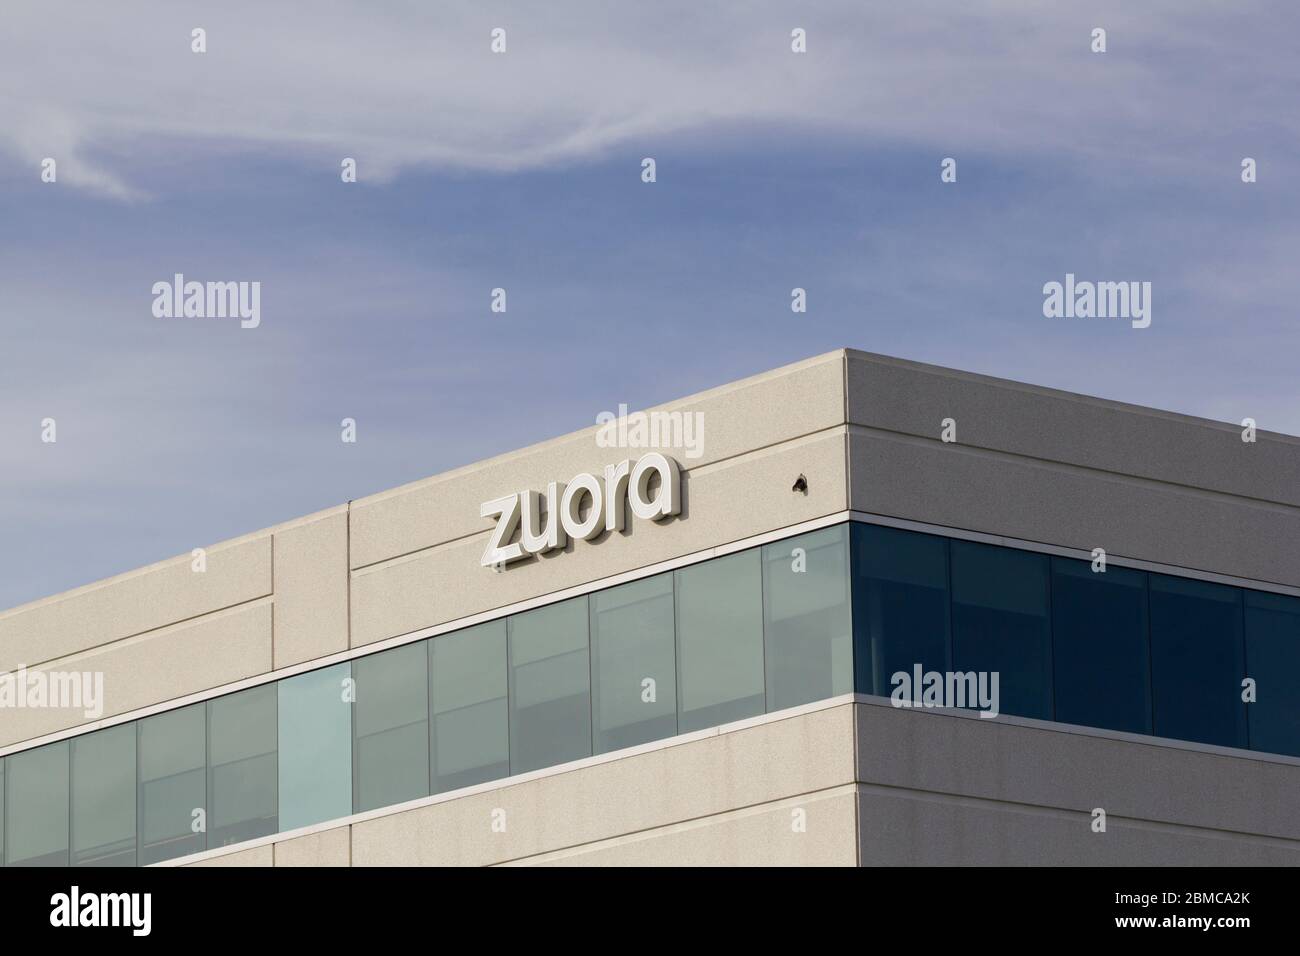 Das Zuora-Zeichen ist am 16. Februar 2020 am Hauptsitz des amerikanischen Unternehmens-Software-Unternehmens Zuora in Redwood City, Kalifornien, zu sehen. Stockfoto